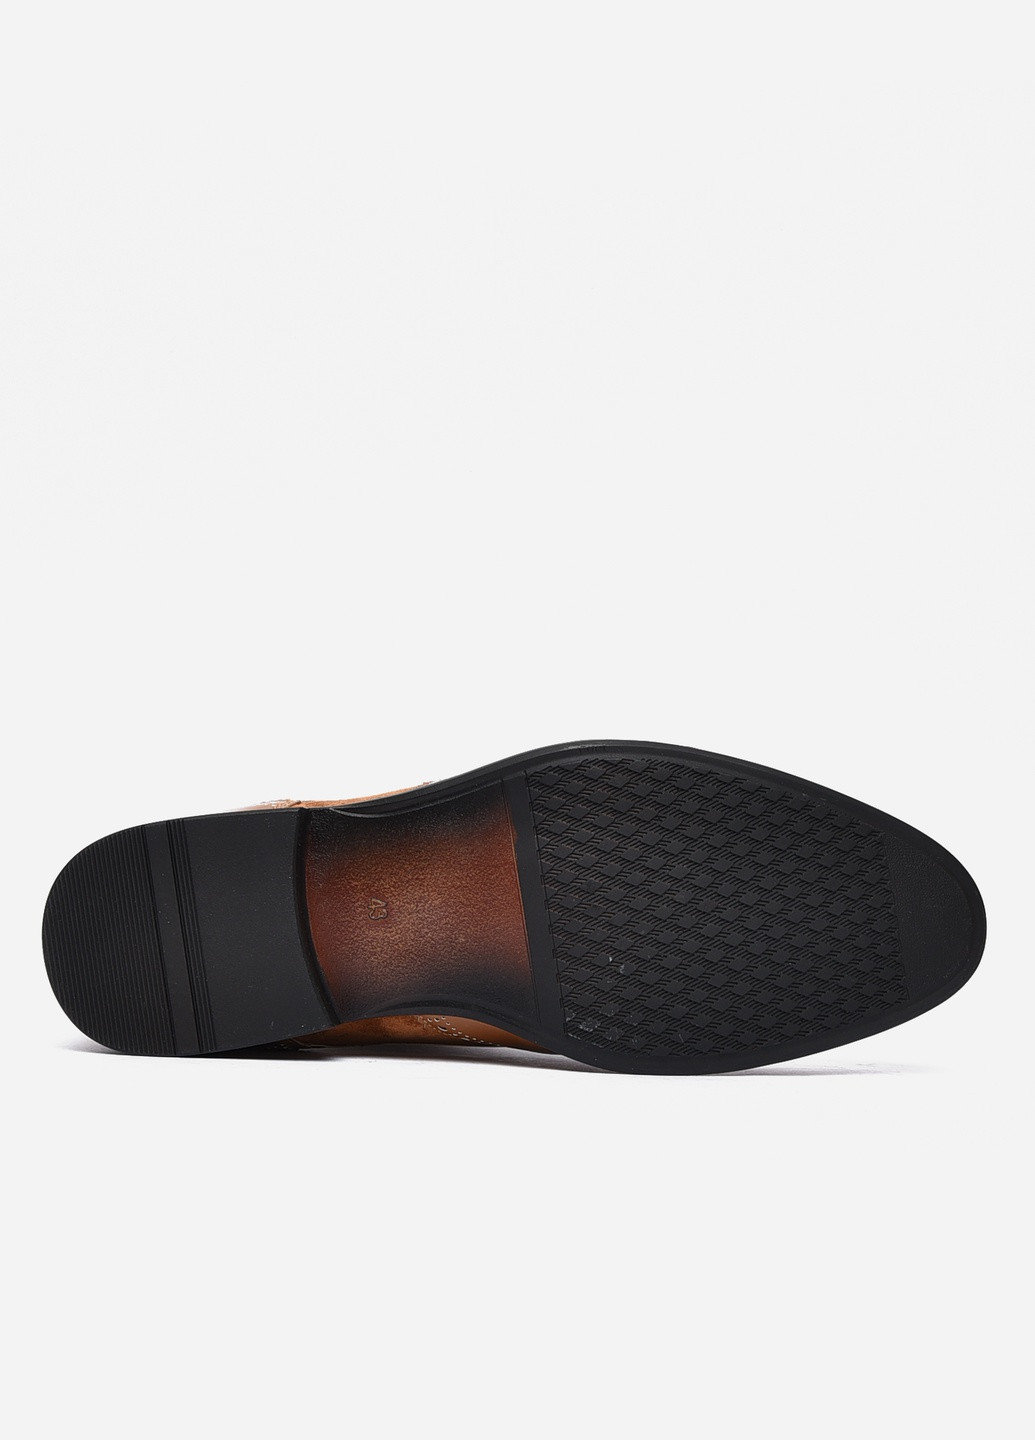 Светло-коричневые классические туфли мужские светло-коричневого цвета Let's Shop на шнурках